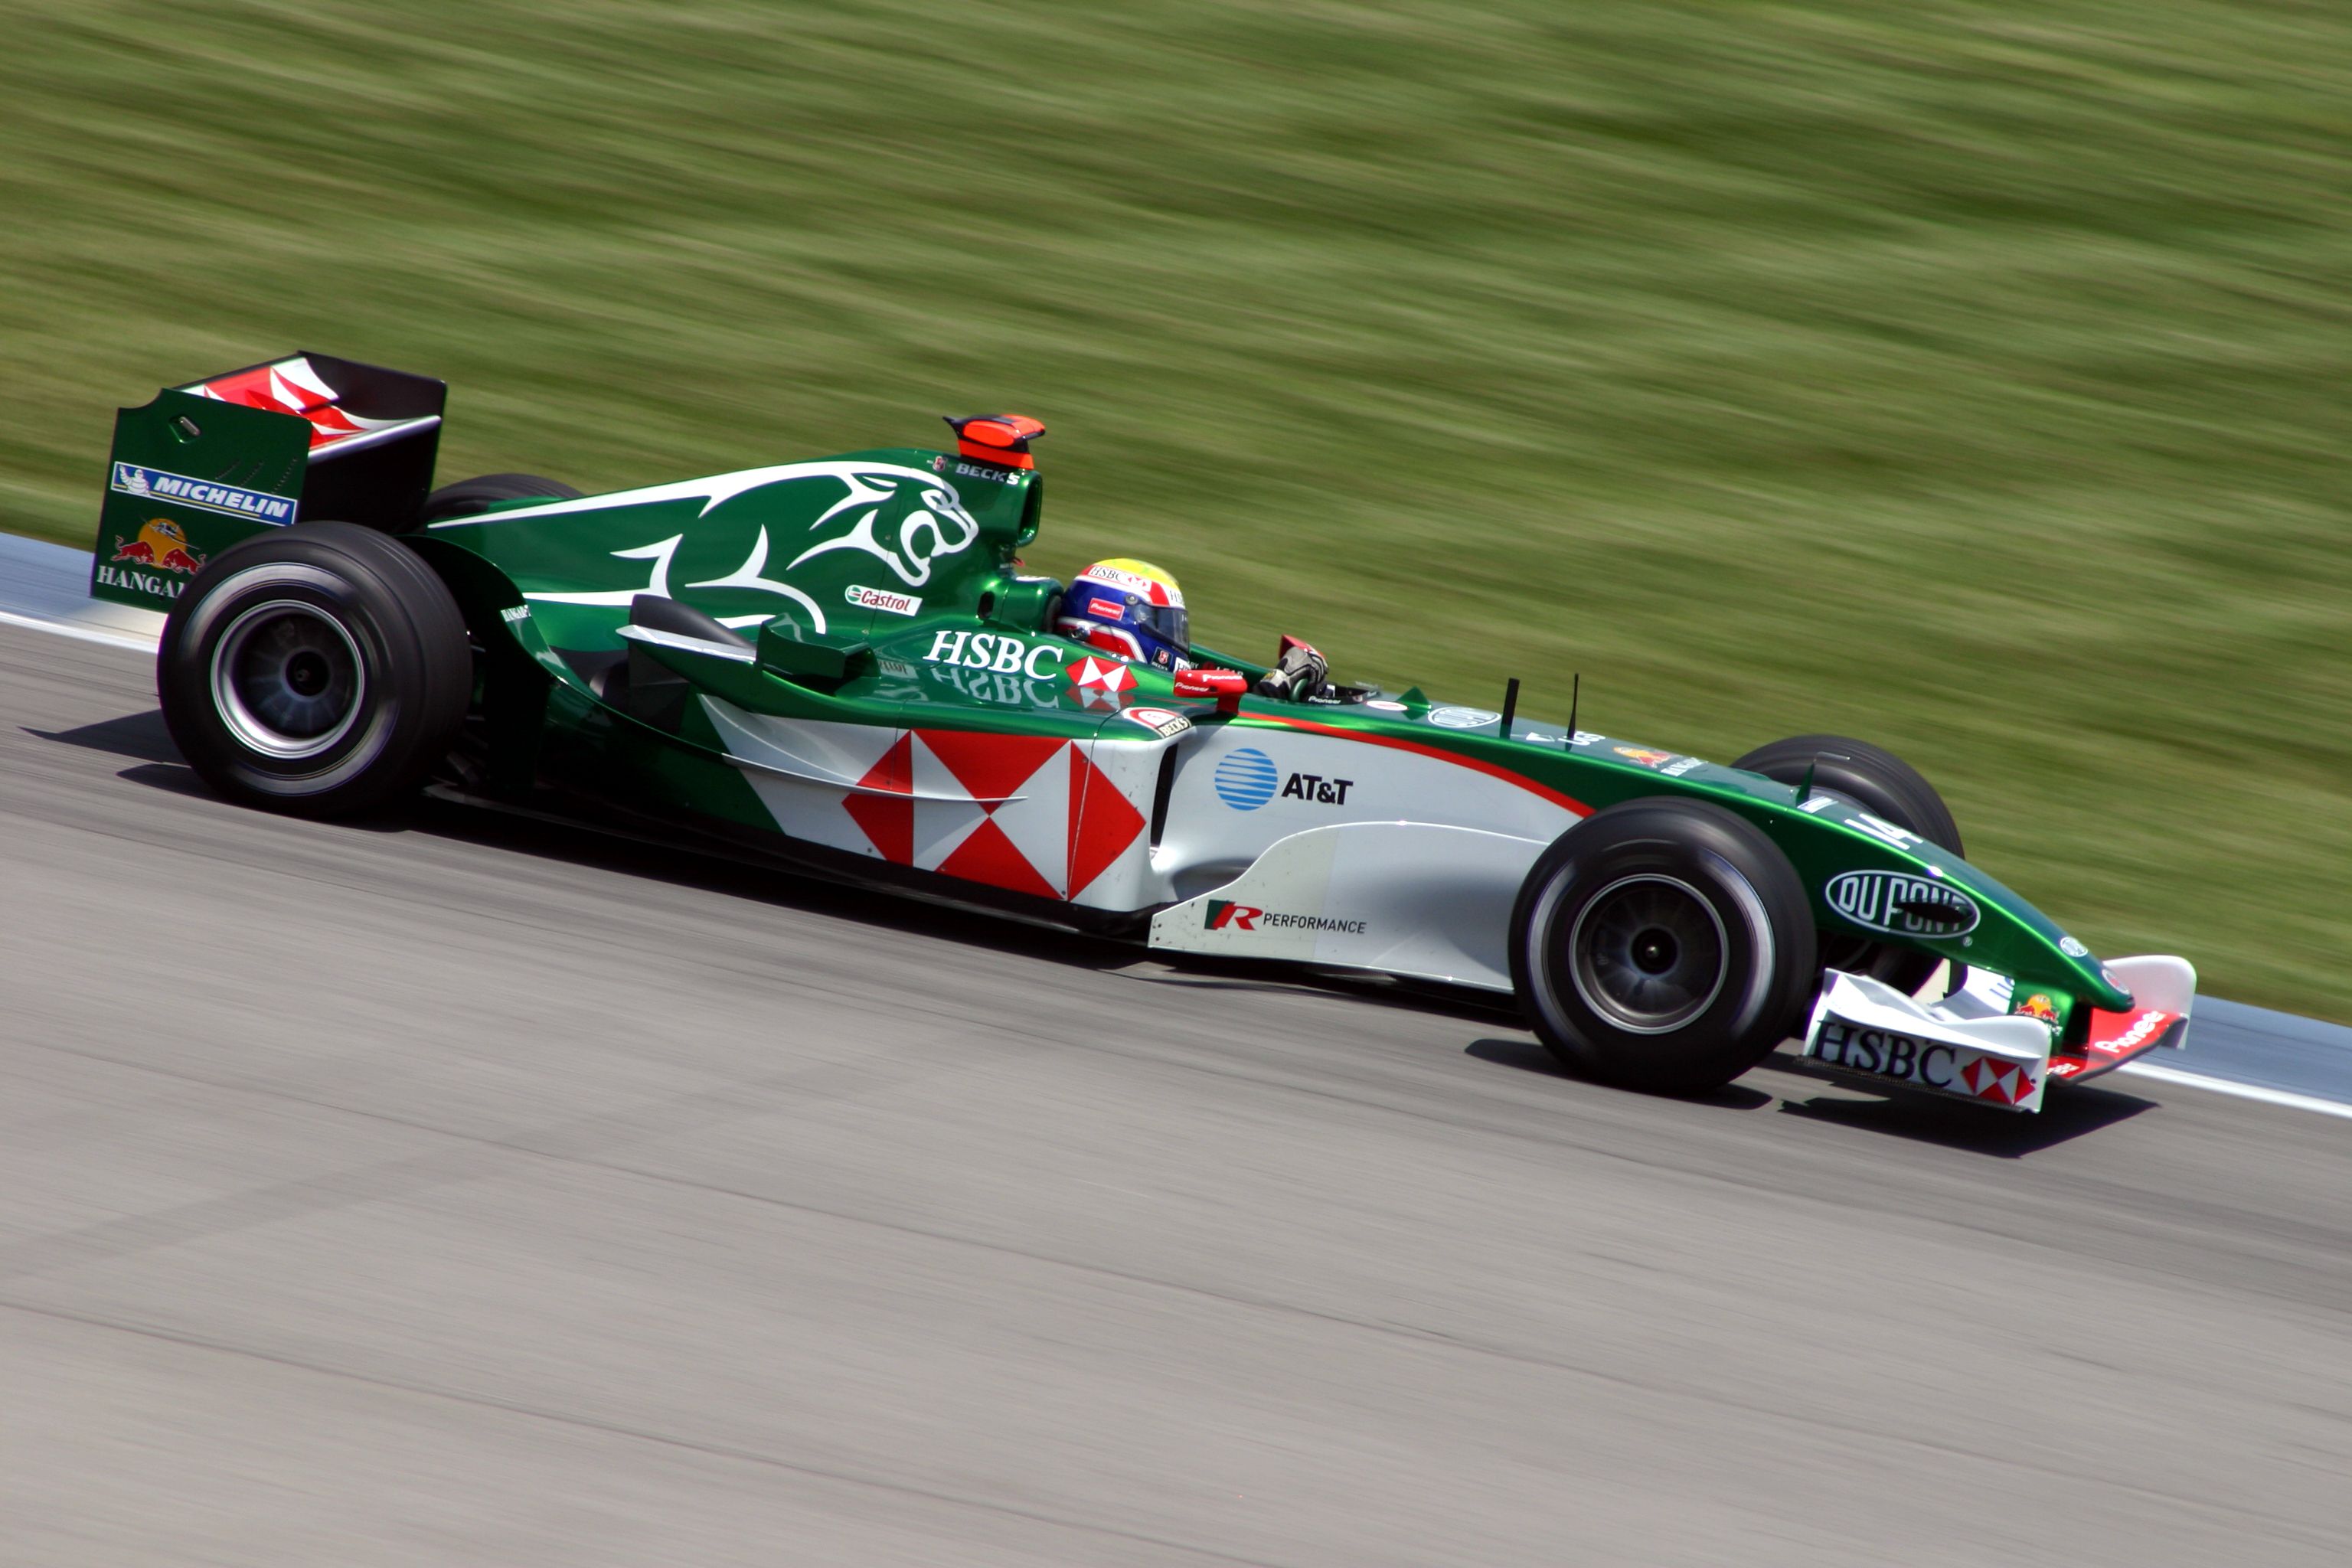 2004 jaguar Formula 1 car